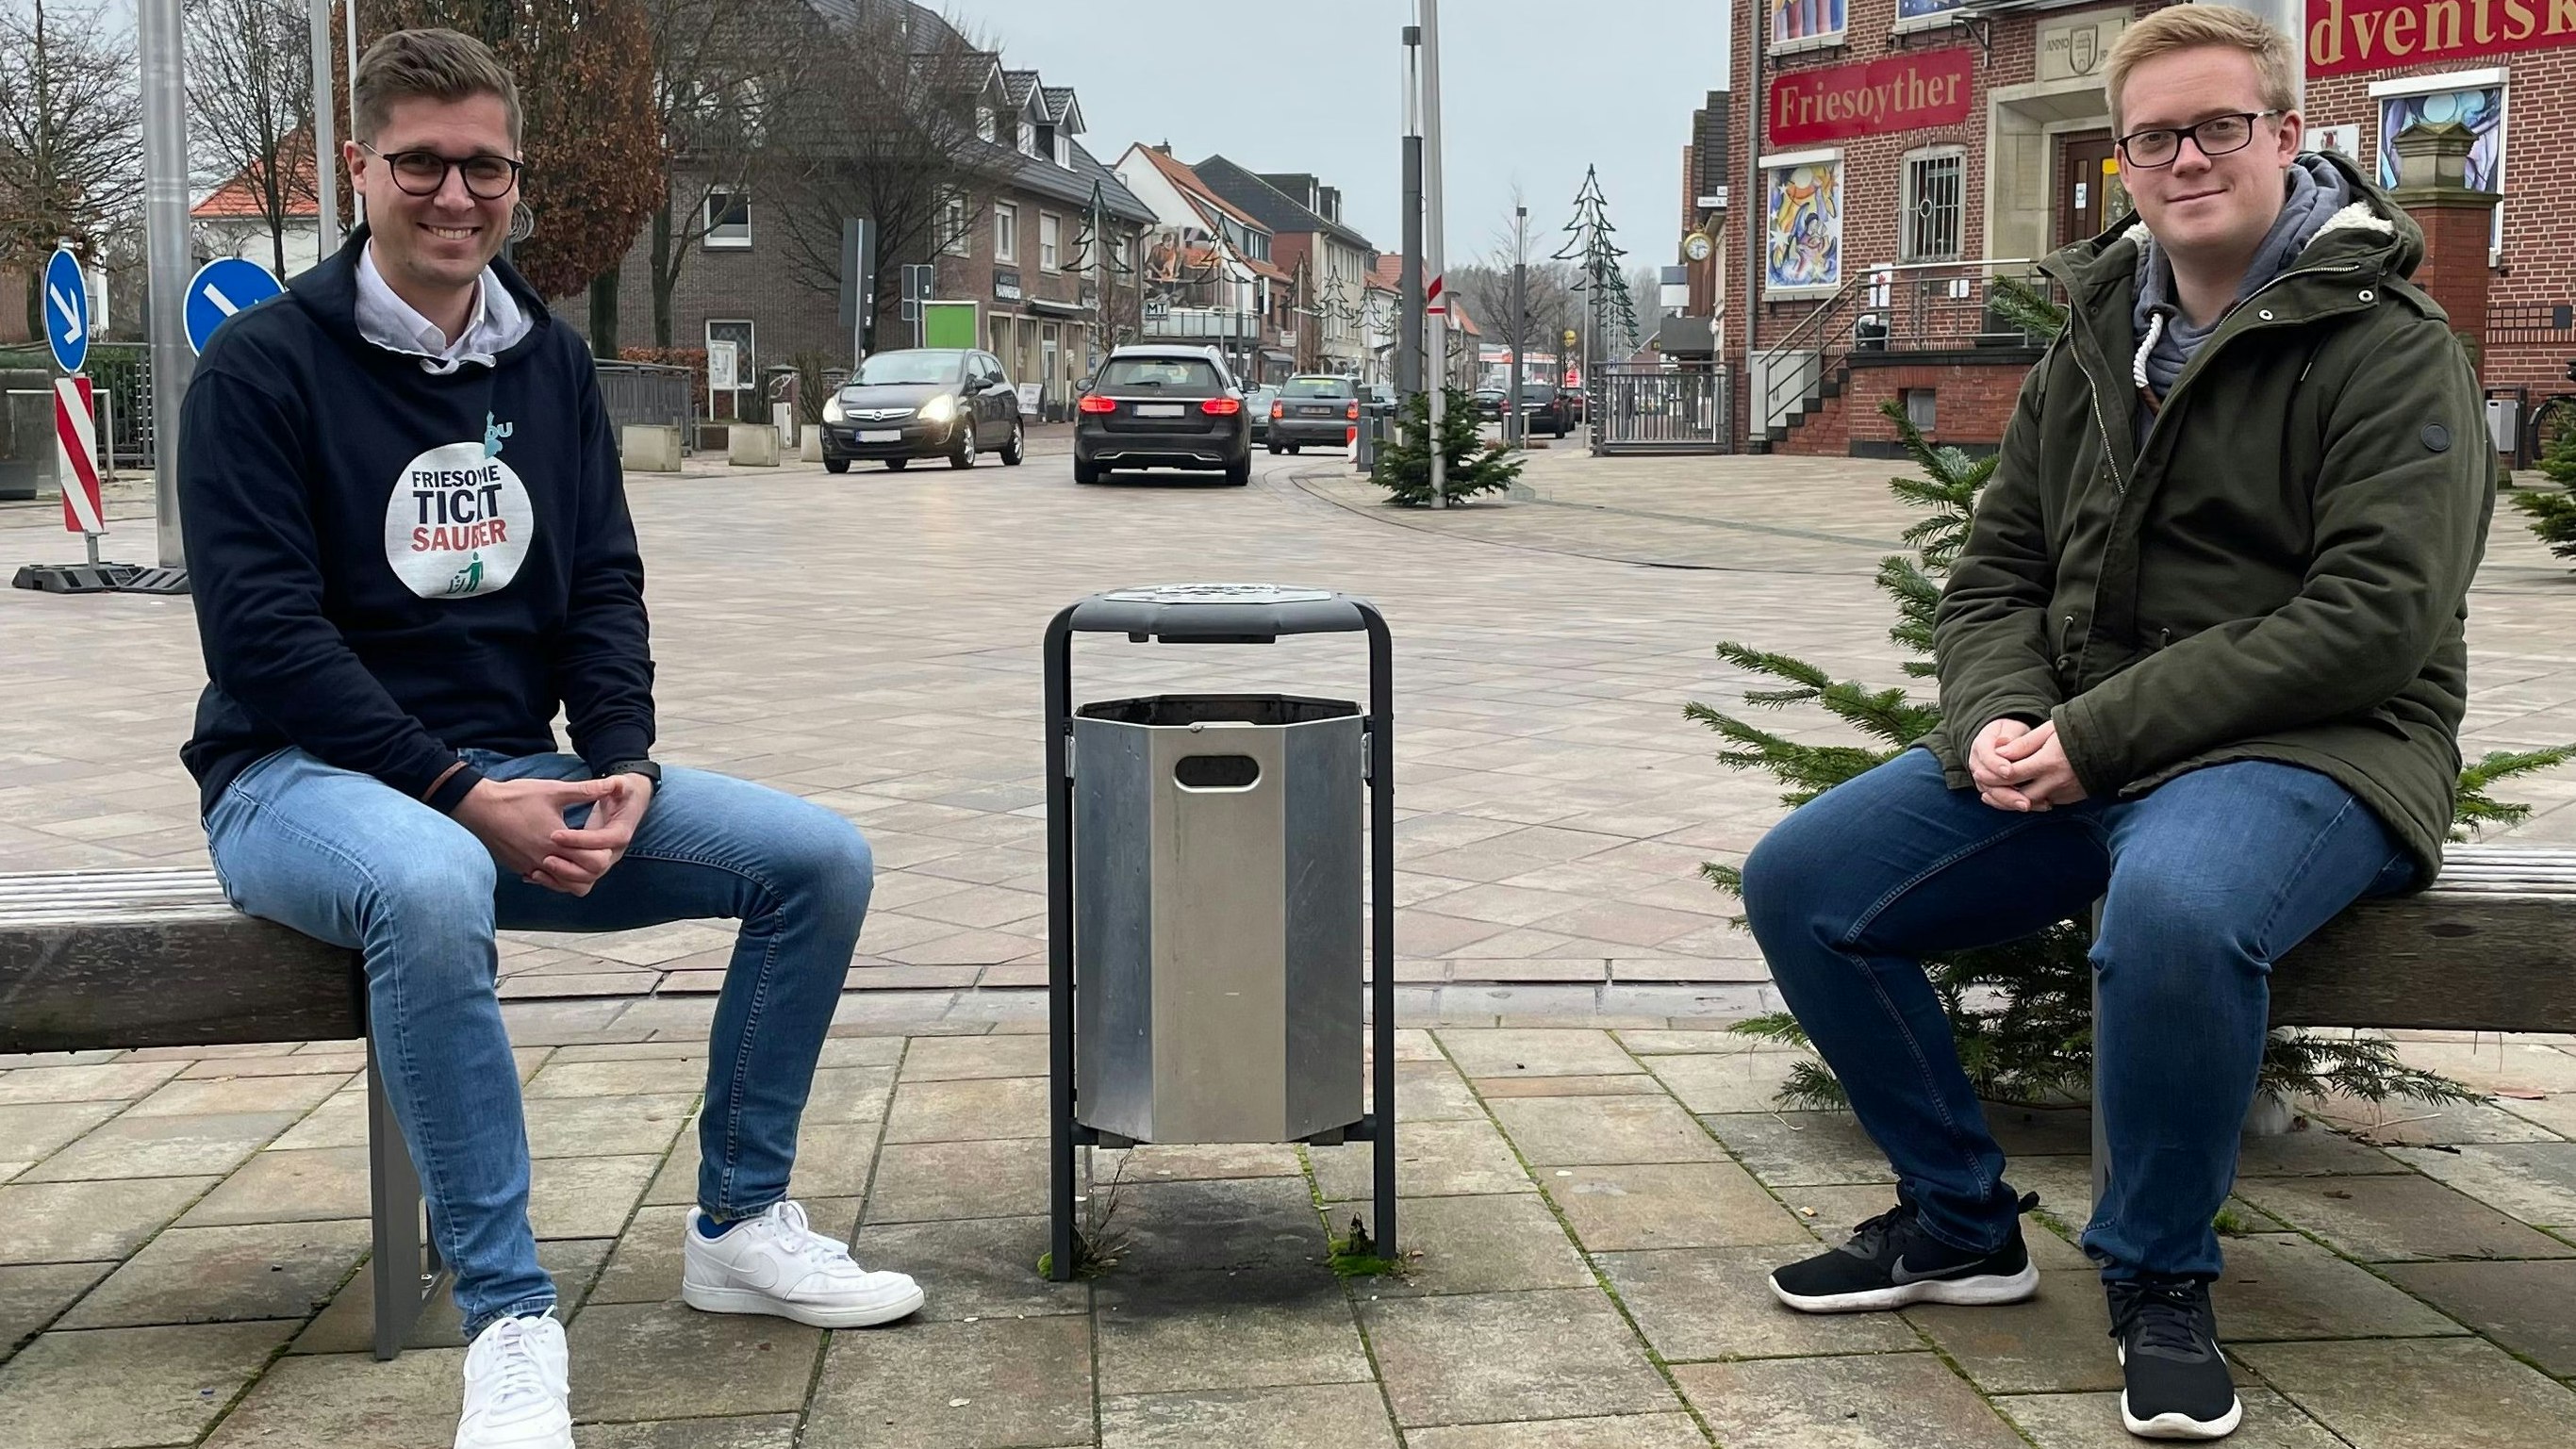 Müllsammler: Jann Christian Hegewald (links) und Lukas Reinken wollen die Friesoyther dazu animieren, weniger Müll achtlos wegzuwerfen. Foto: Stix